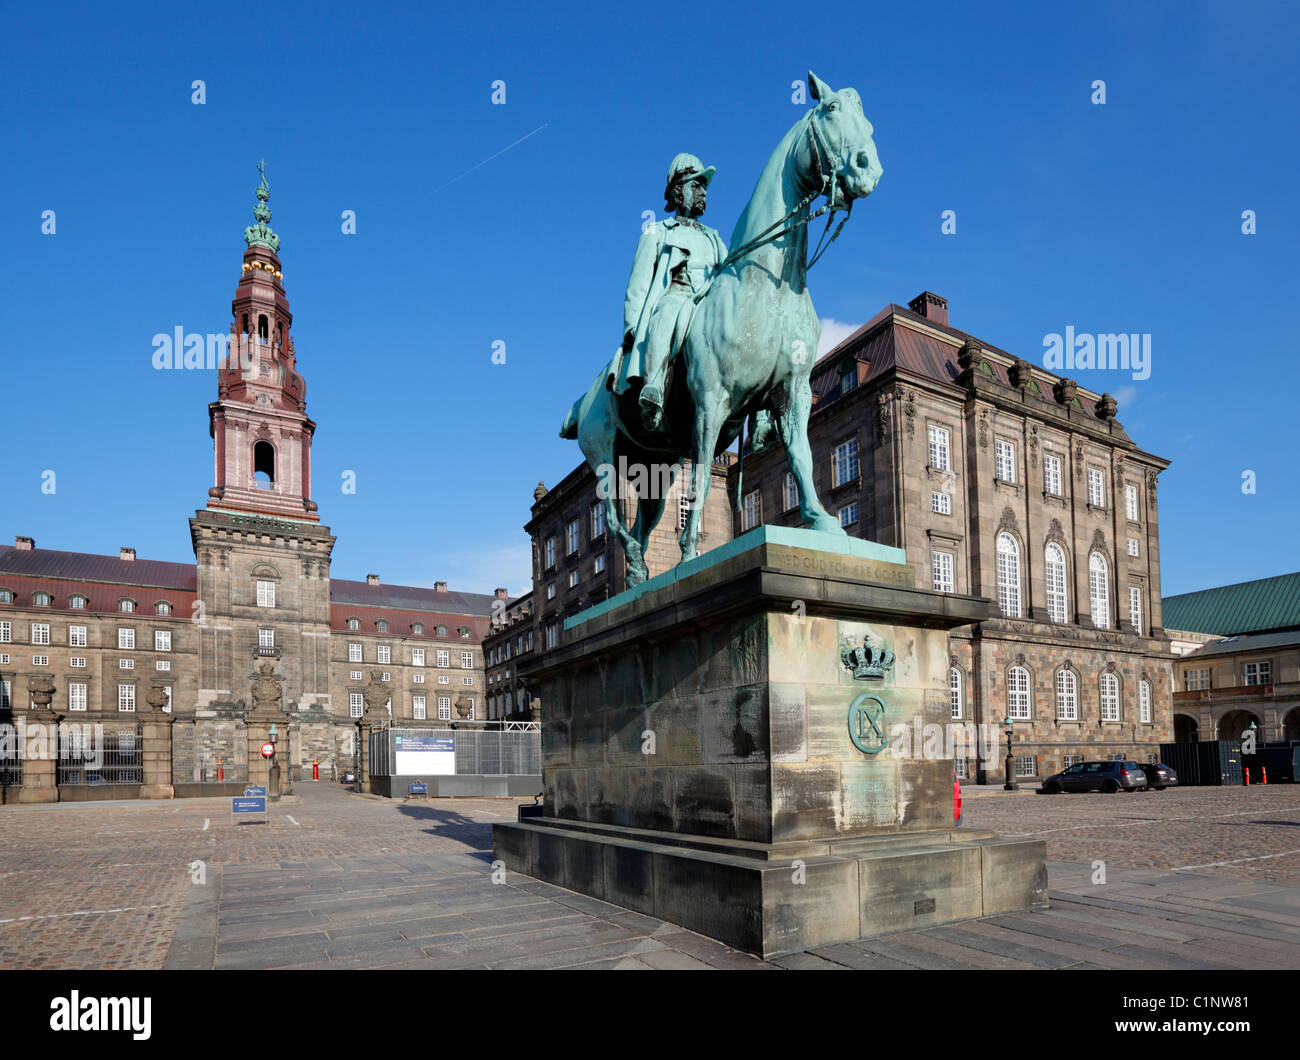 La estatua ecuestre del rey Christian IX y la torre principal de Christiansborg Palace como se ve desde la tierra de equitación Foto de stock